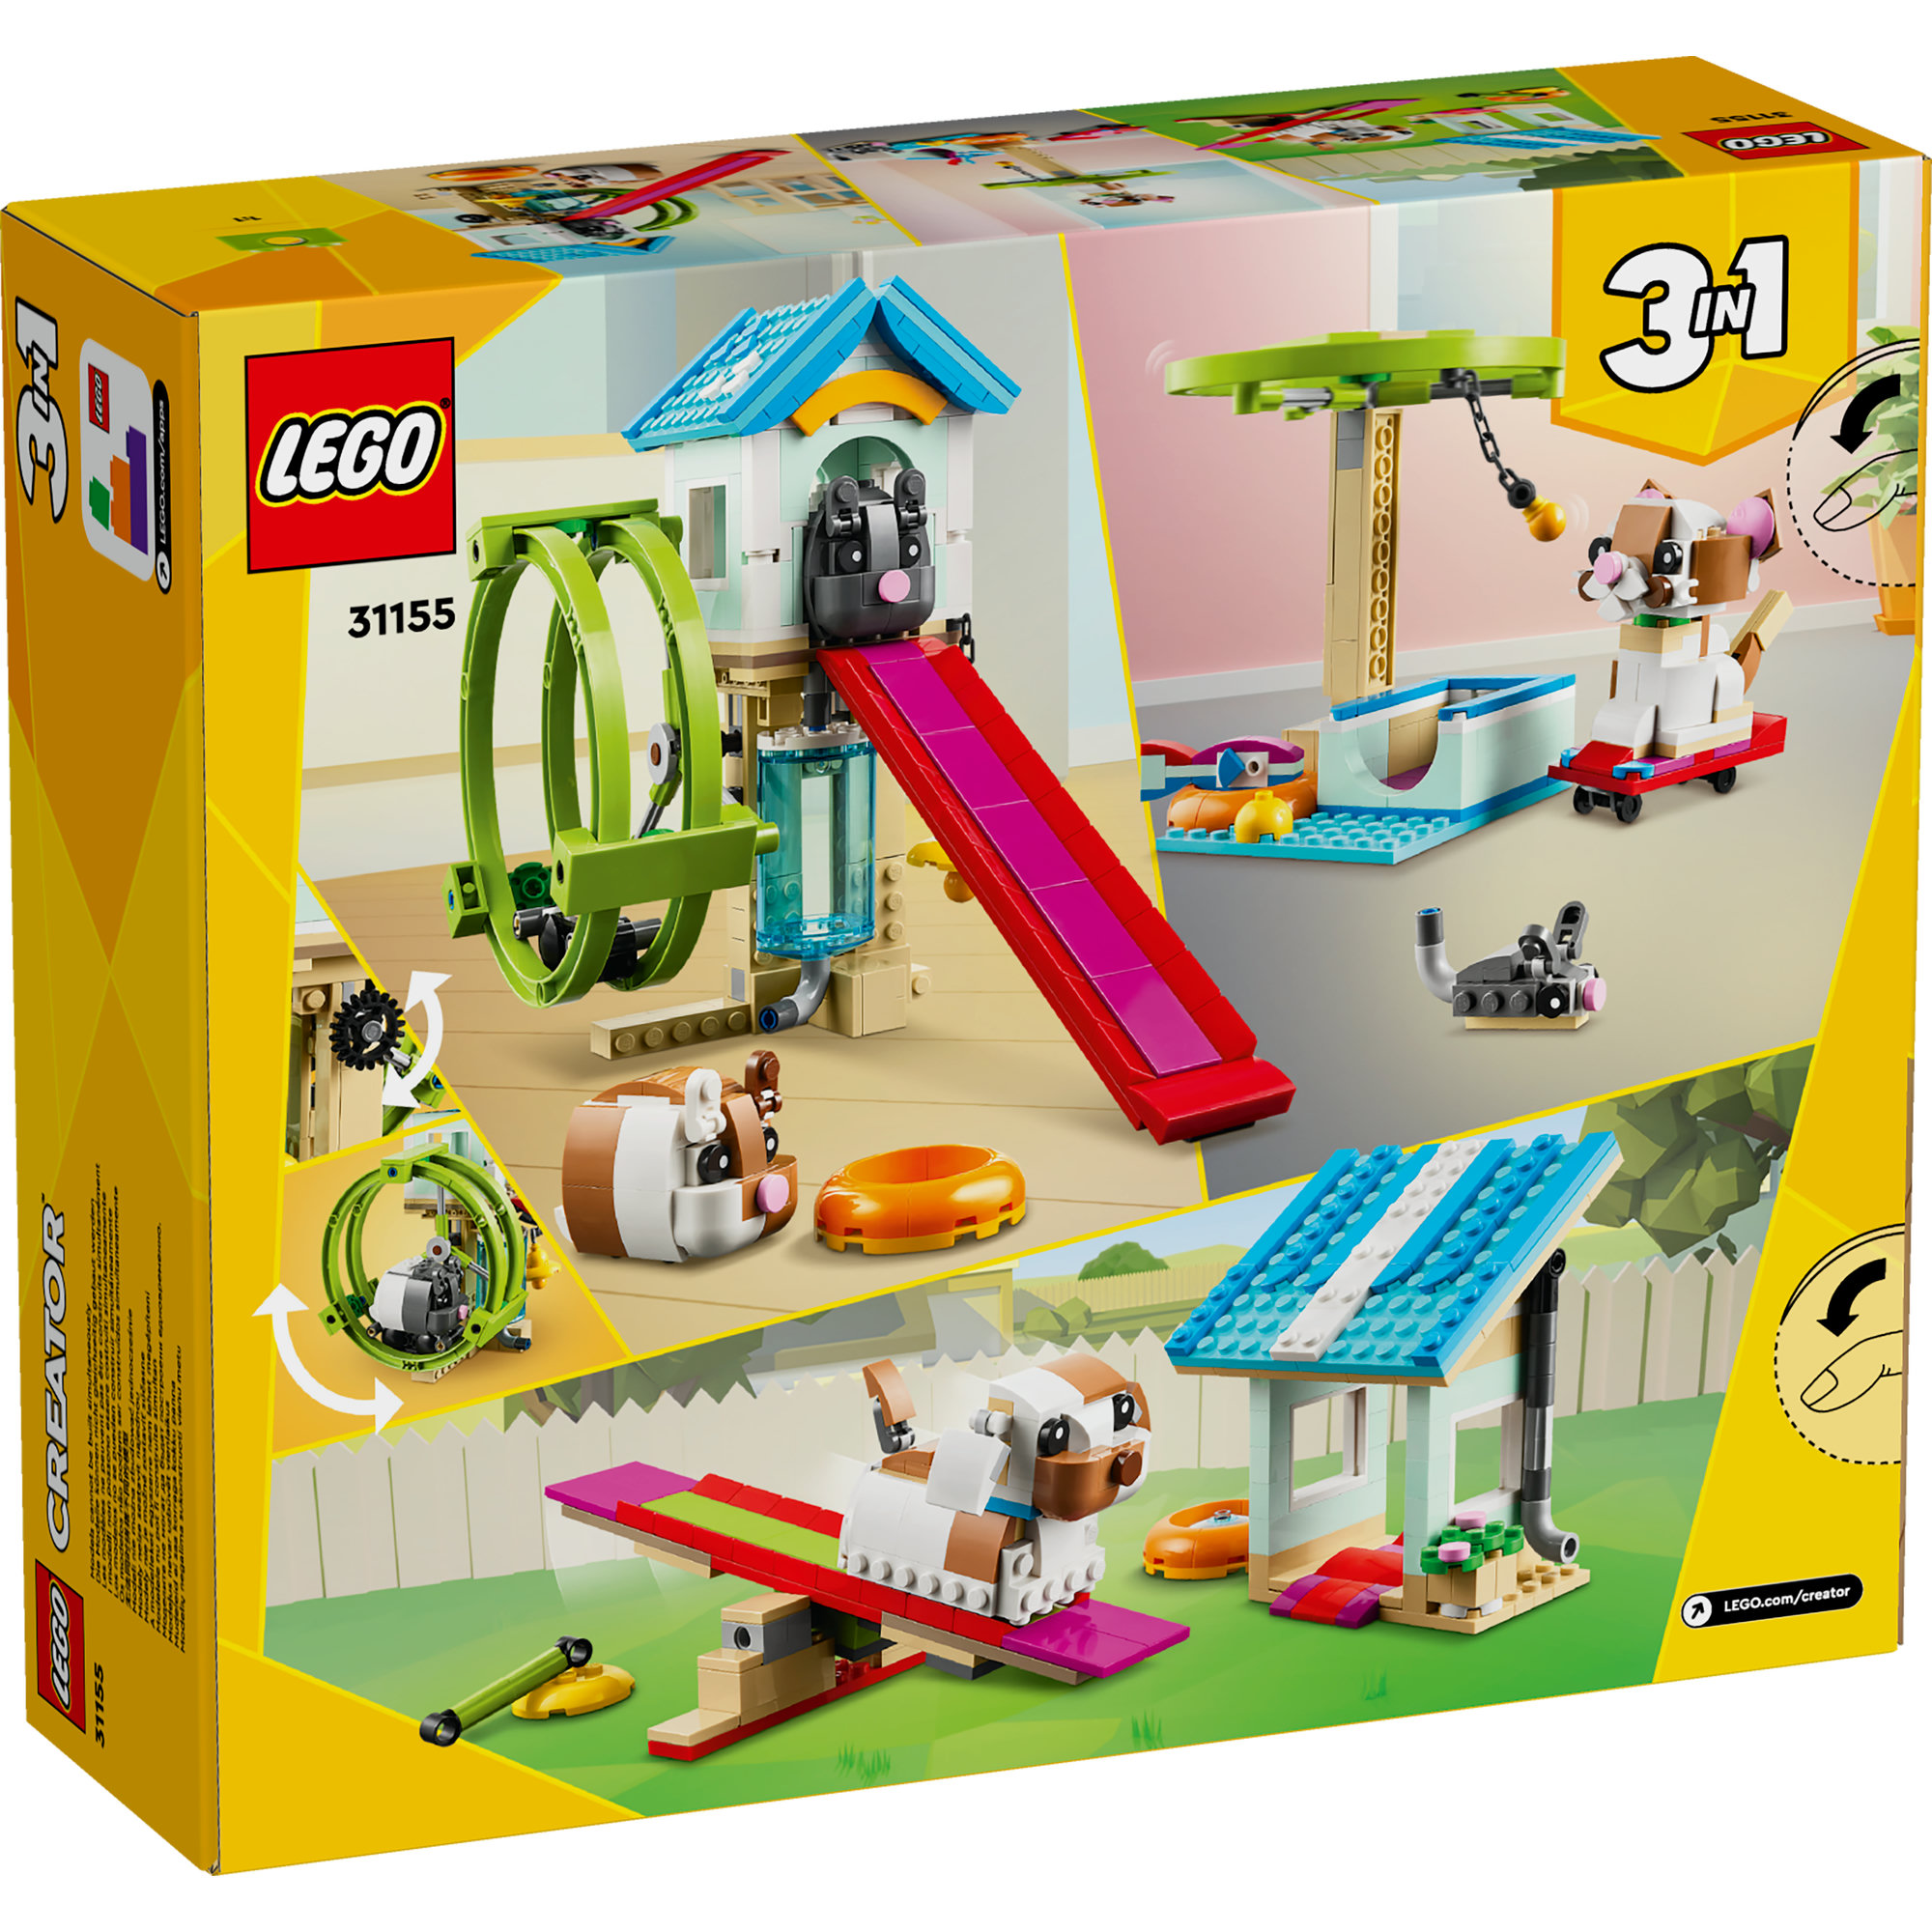 LEGO CREATOR 31155 Đồ chơi lắp ráp Vòng quay tập chạy cho Hamster (416 chi tiết)